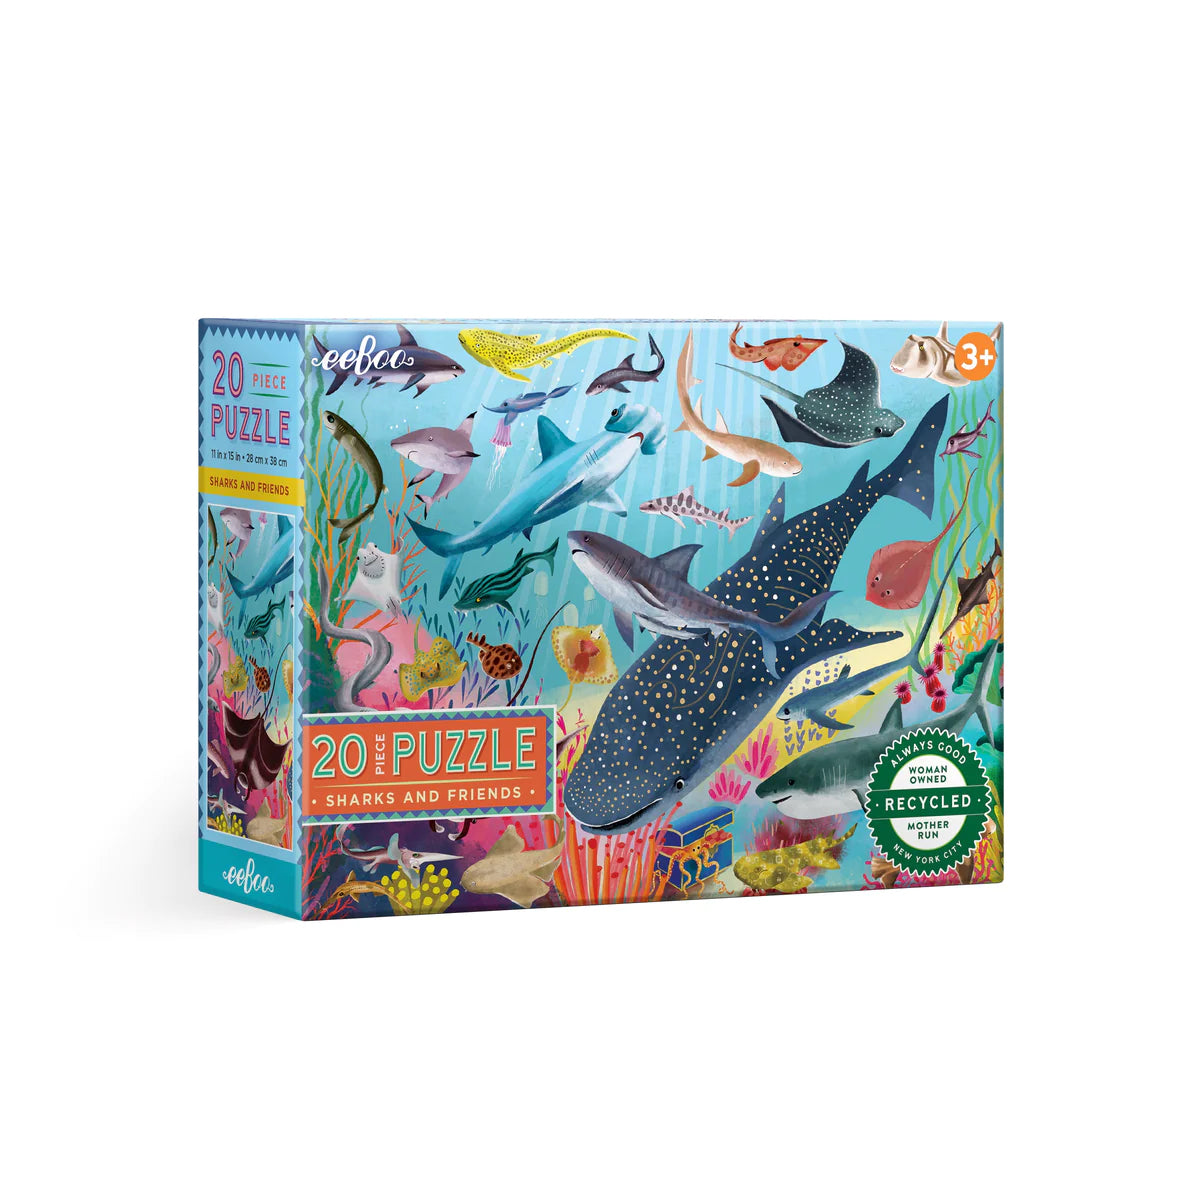 Sharks & friends 20-piece puzzle